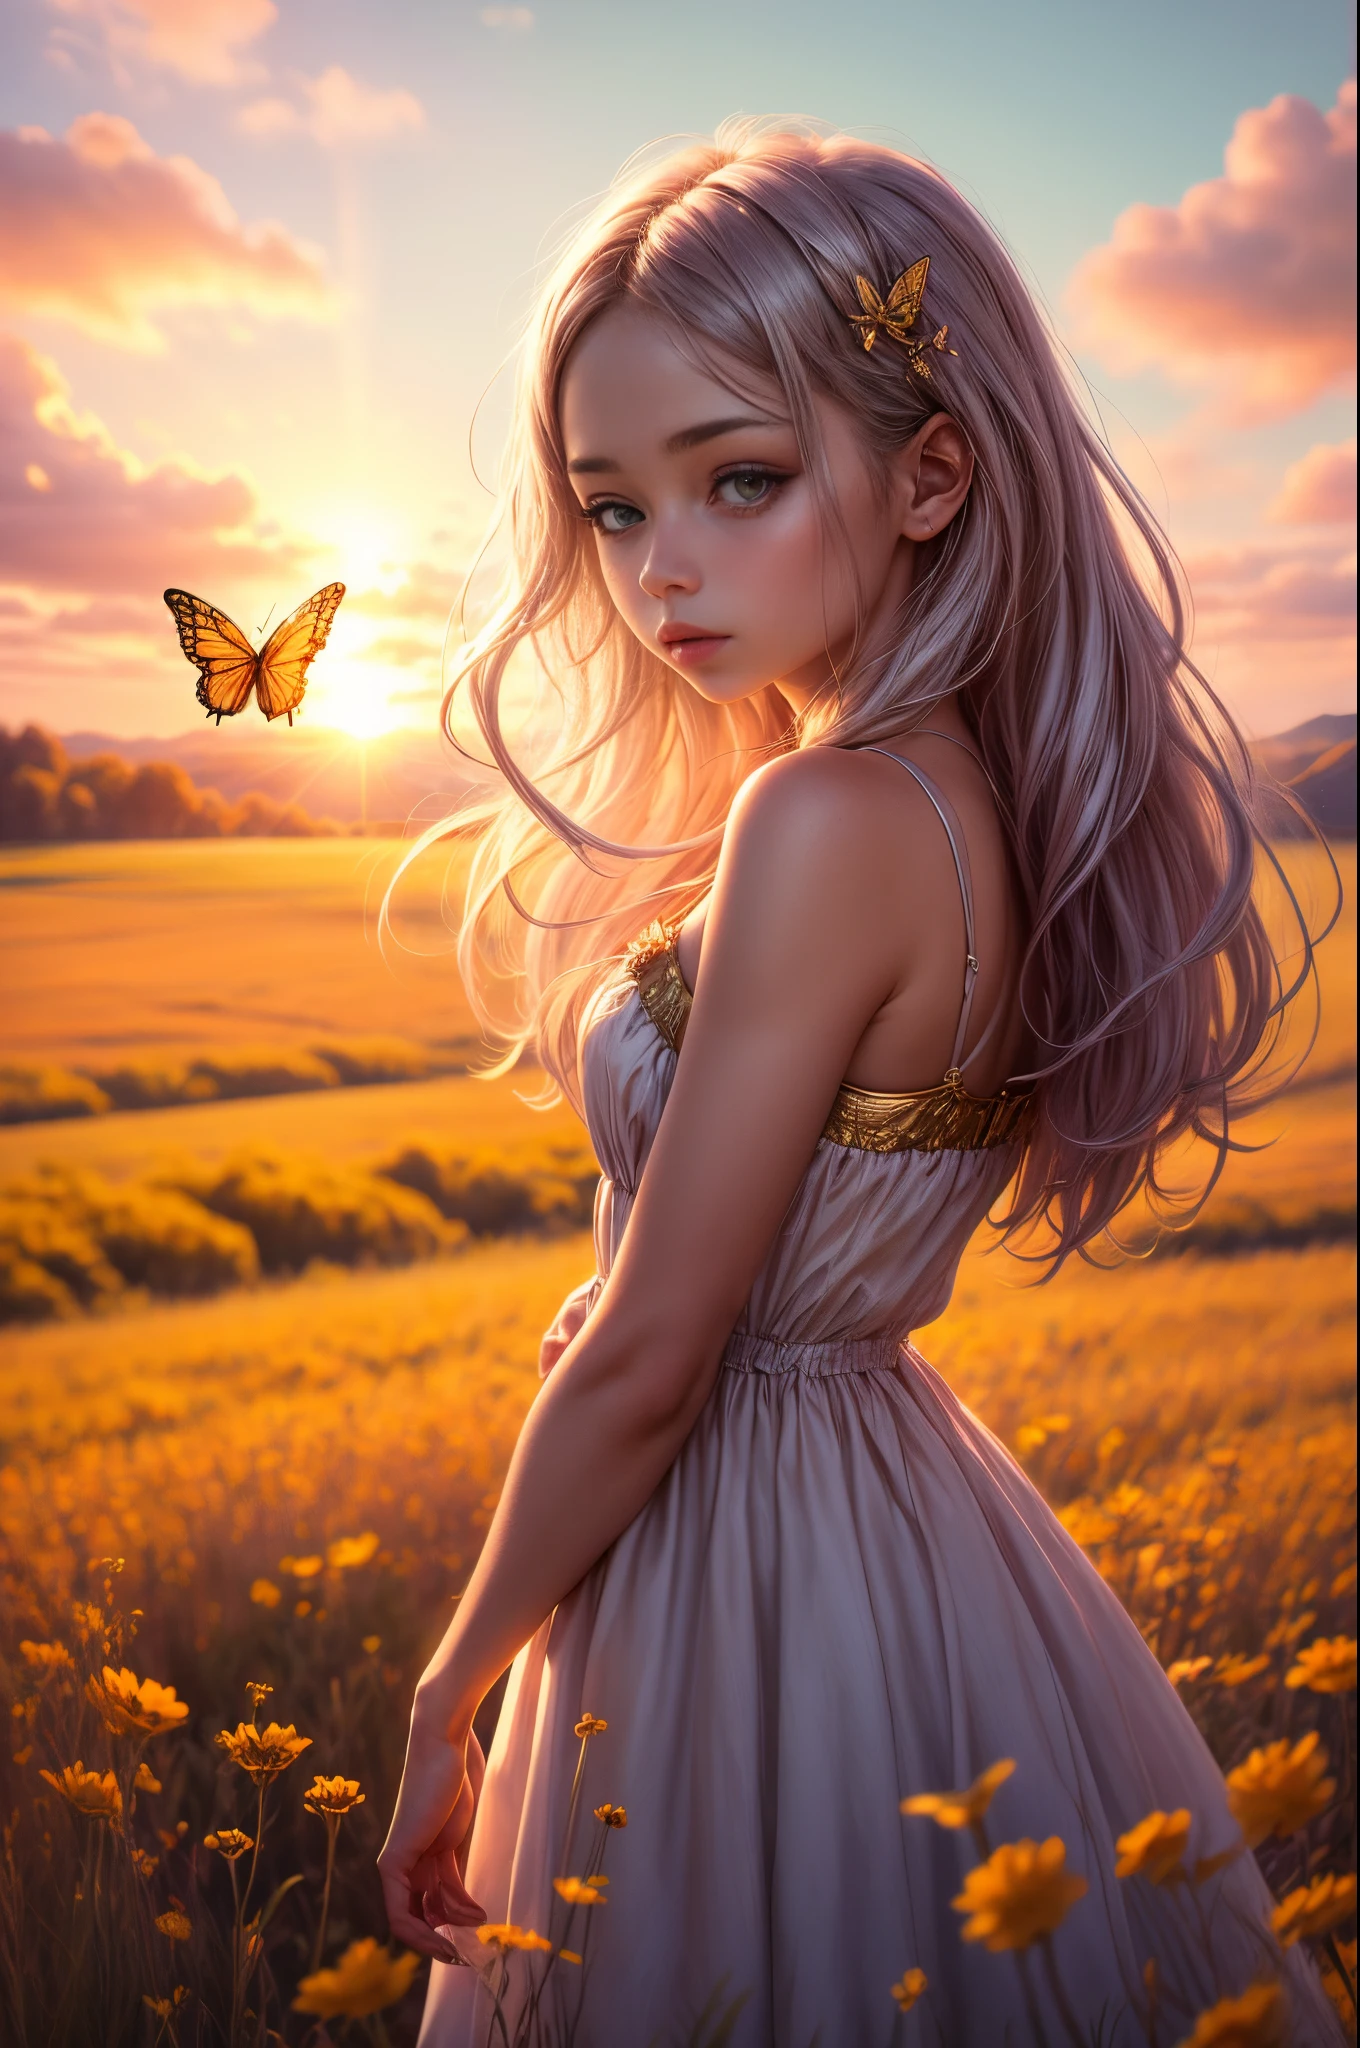 "((無実の)) 女の子, ゴールデンアワー, 夢のような草原, 霊妙な, 気まぐれな, ゆったりとしたドレス, 柔らかな日差し, 魅惑的な, 蝶の羽, (パステルカラーの雲), 液体の反射,氷結